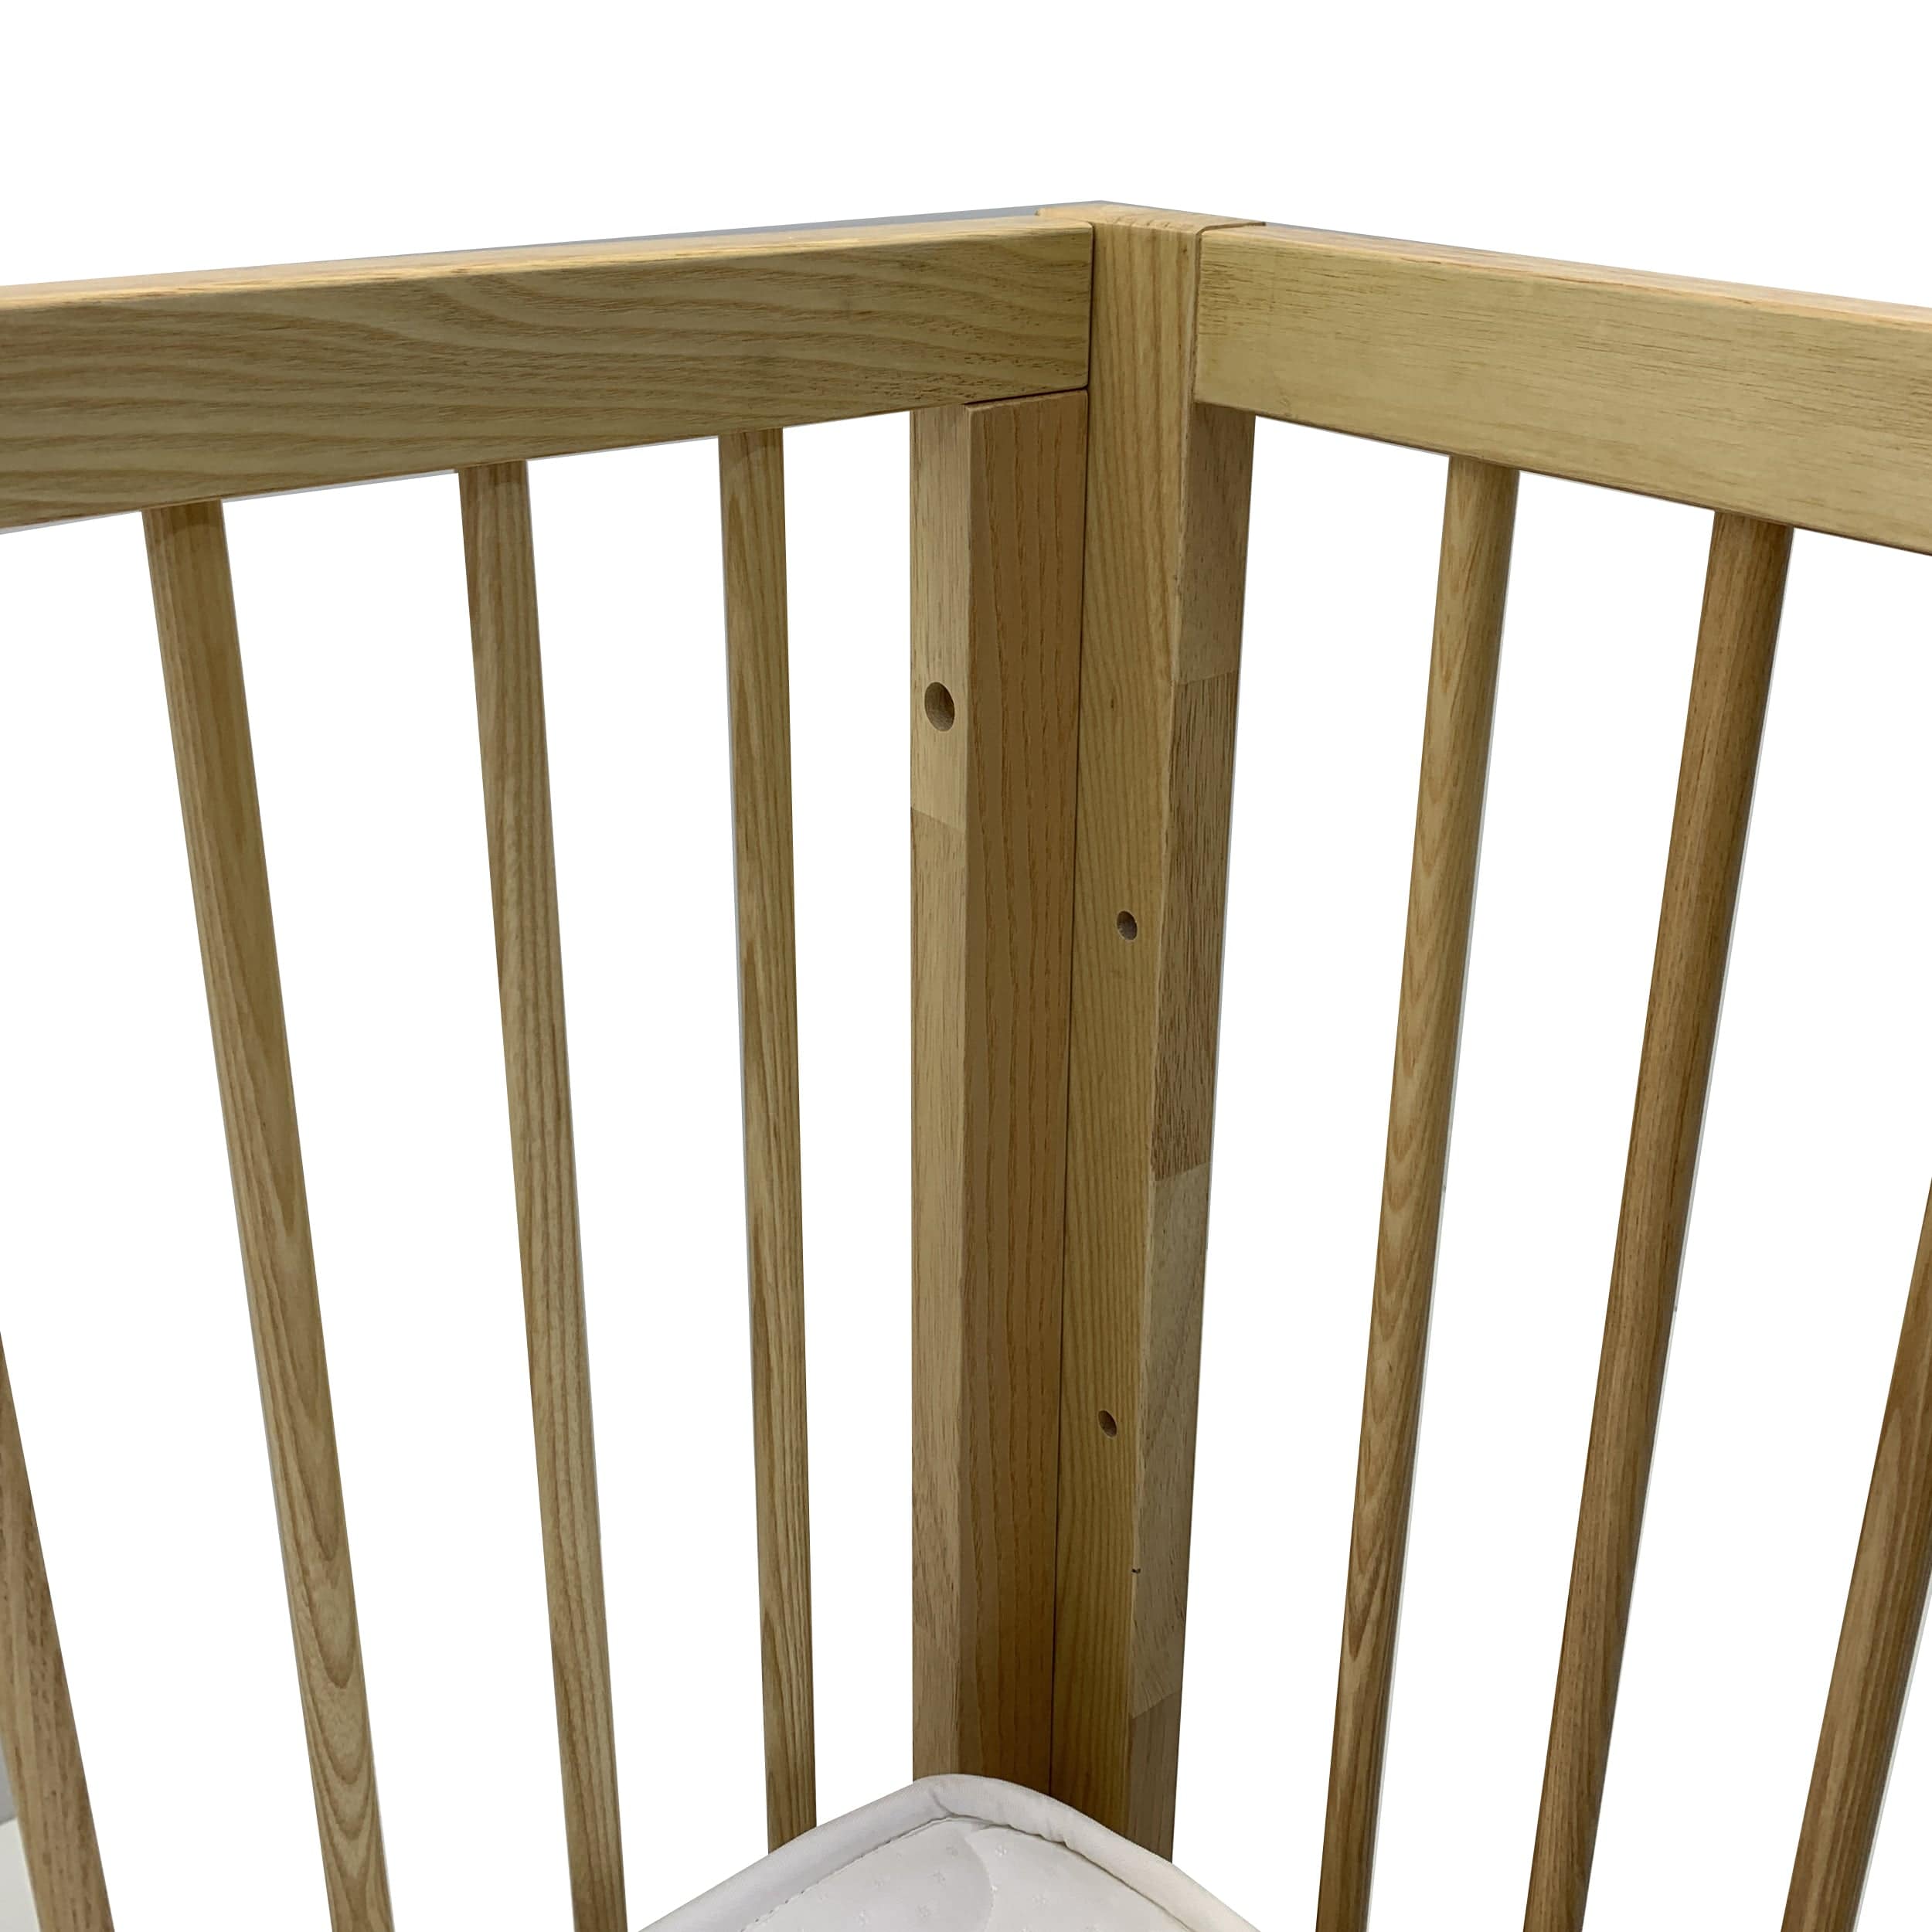 Baby Crib Et-Y005-N -  Cribs | سرير الطفل - ebarza Furniture UAE | Shop Modern Furniture in Abu Dhabi & Dubai - مفروشات ايبازرا في الامارات | تسوق اثاث عصري وديكورات مميزة في دبي وابوظبي